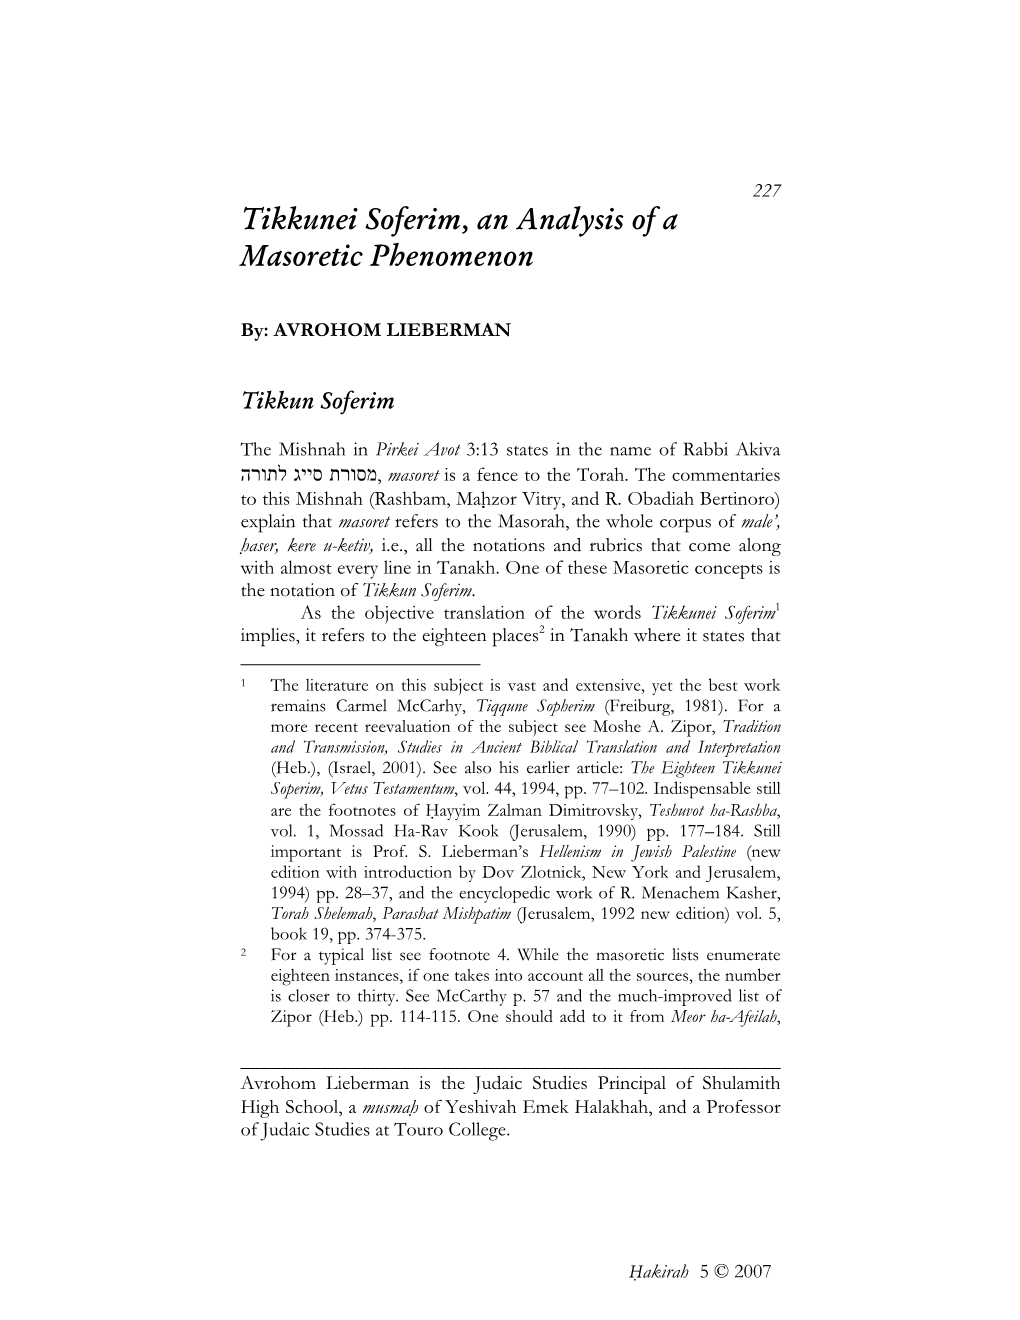 Tikkunei Soferim, an Analysis of a Masoretic Phenomenon